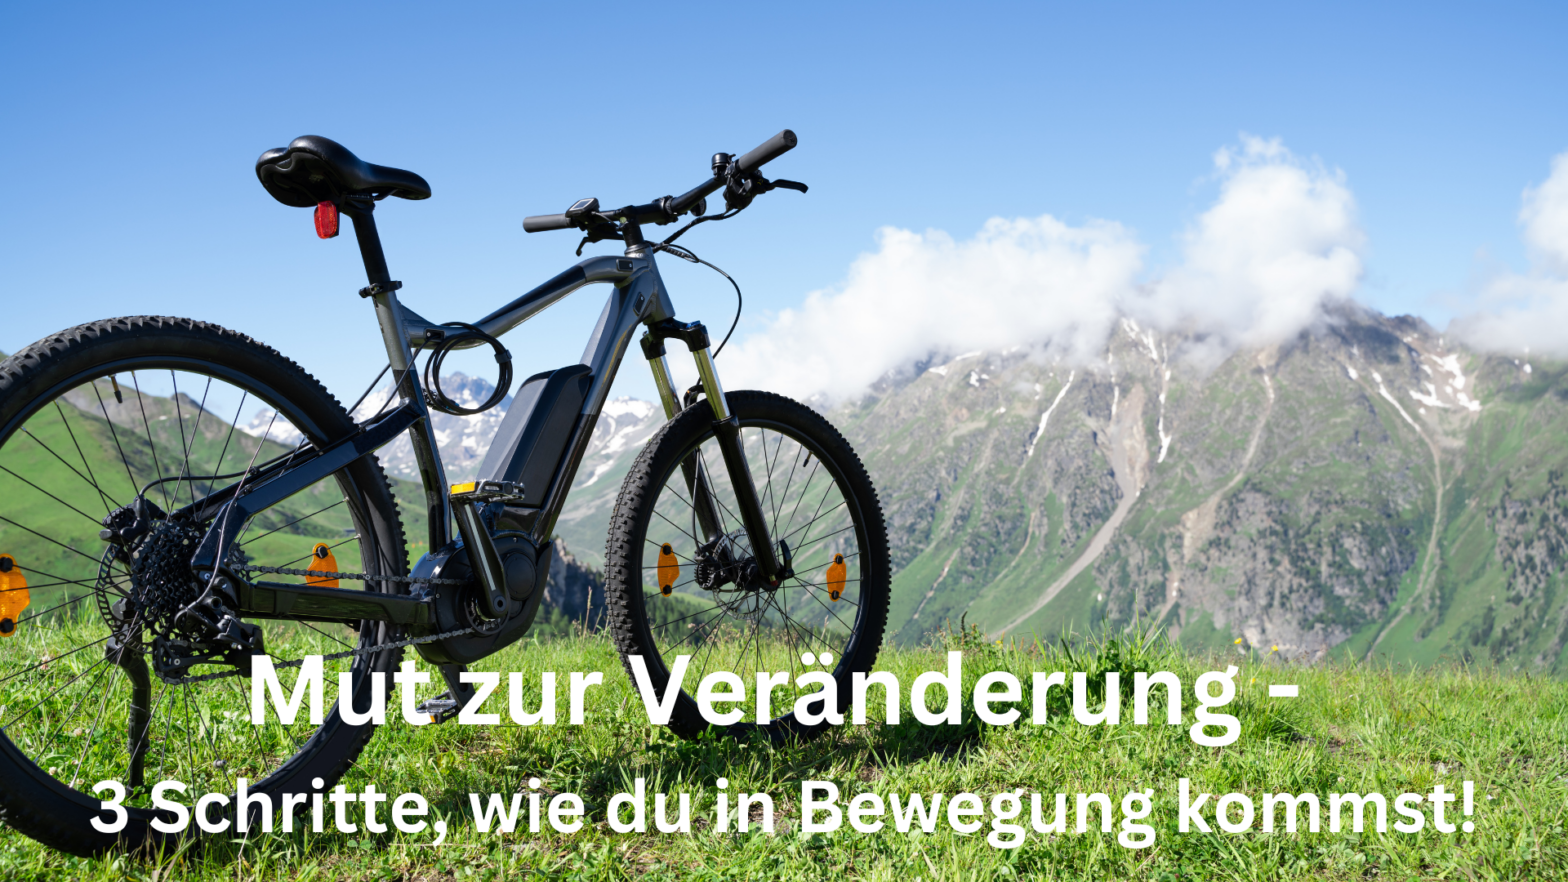 Fahrrad vor Gebirge, Titel: Mut zur Veränderung, 3 Schritte, die dich in Bewegung bringen